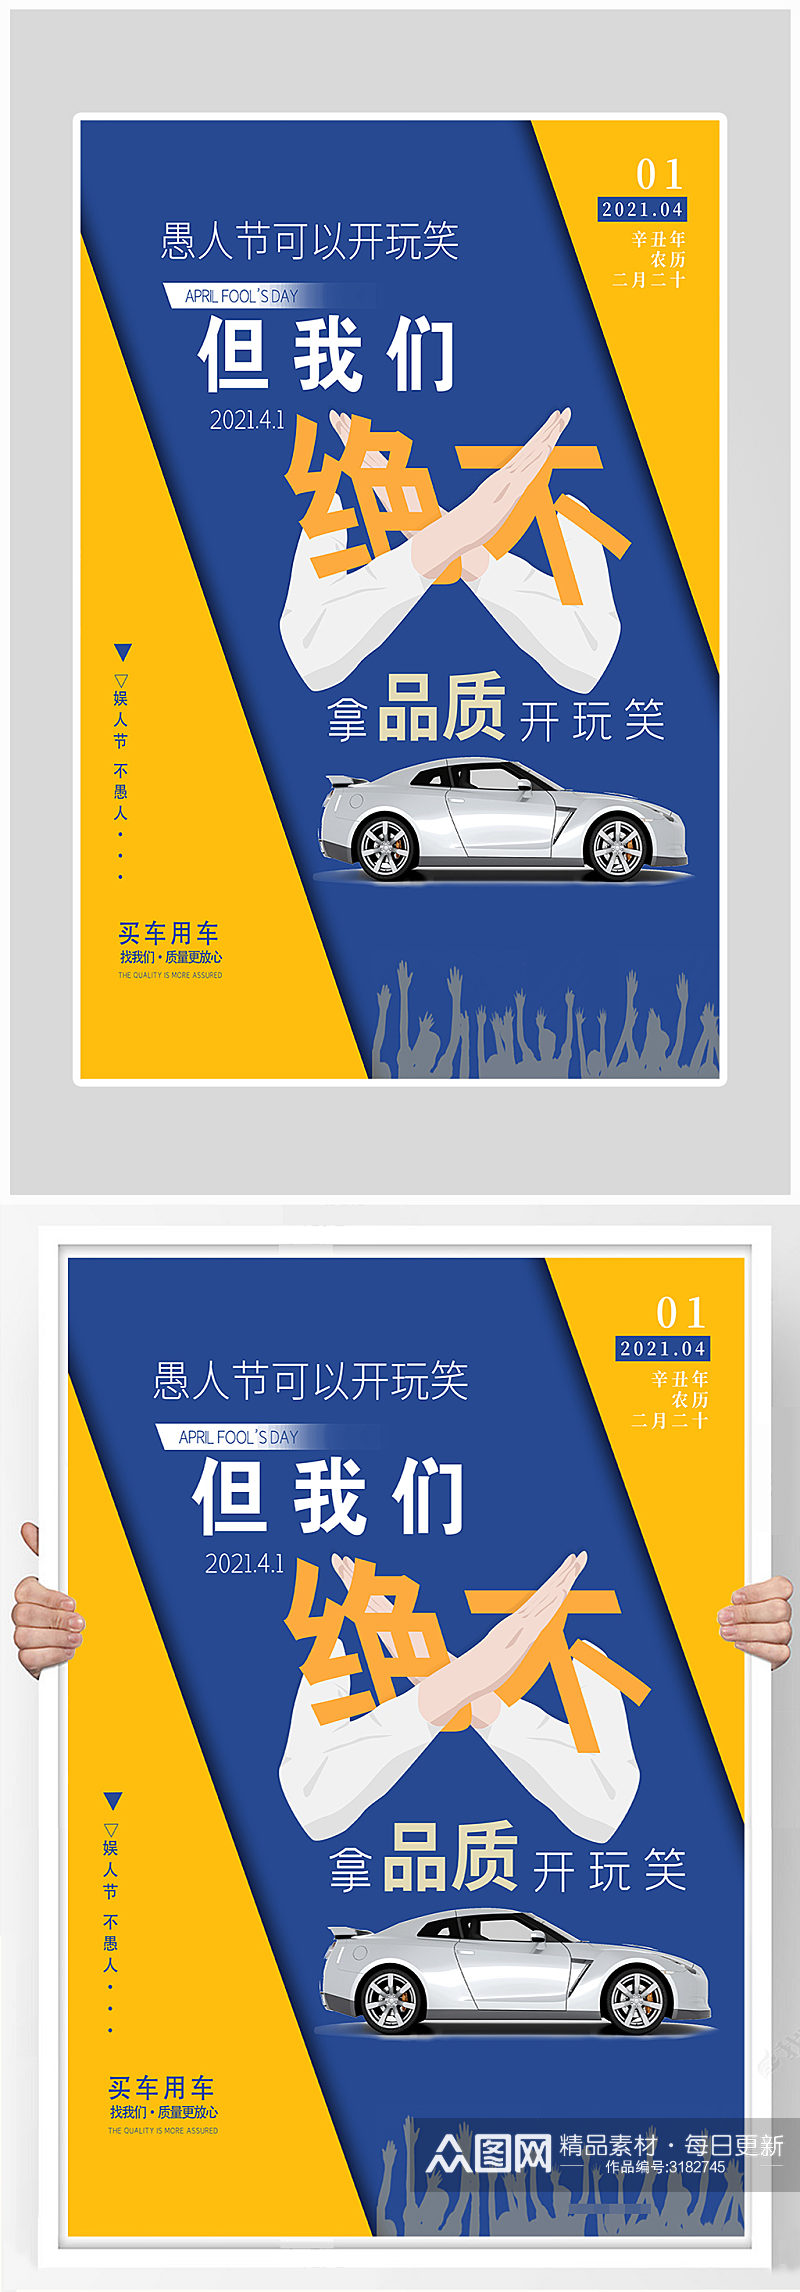 简约大气汽车销售促销海报设计素材